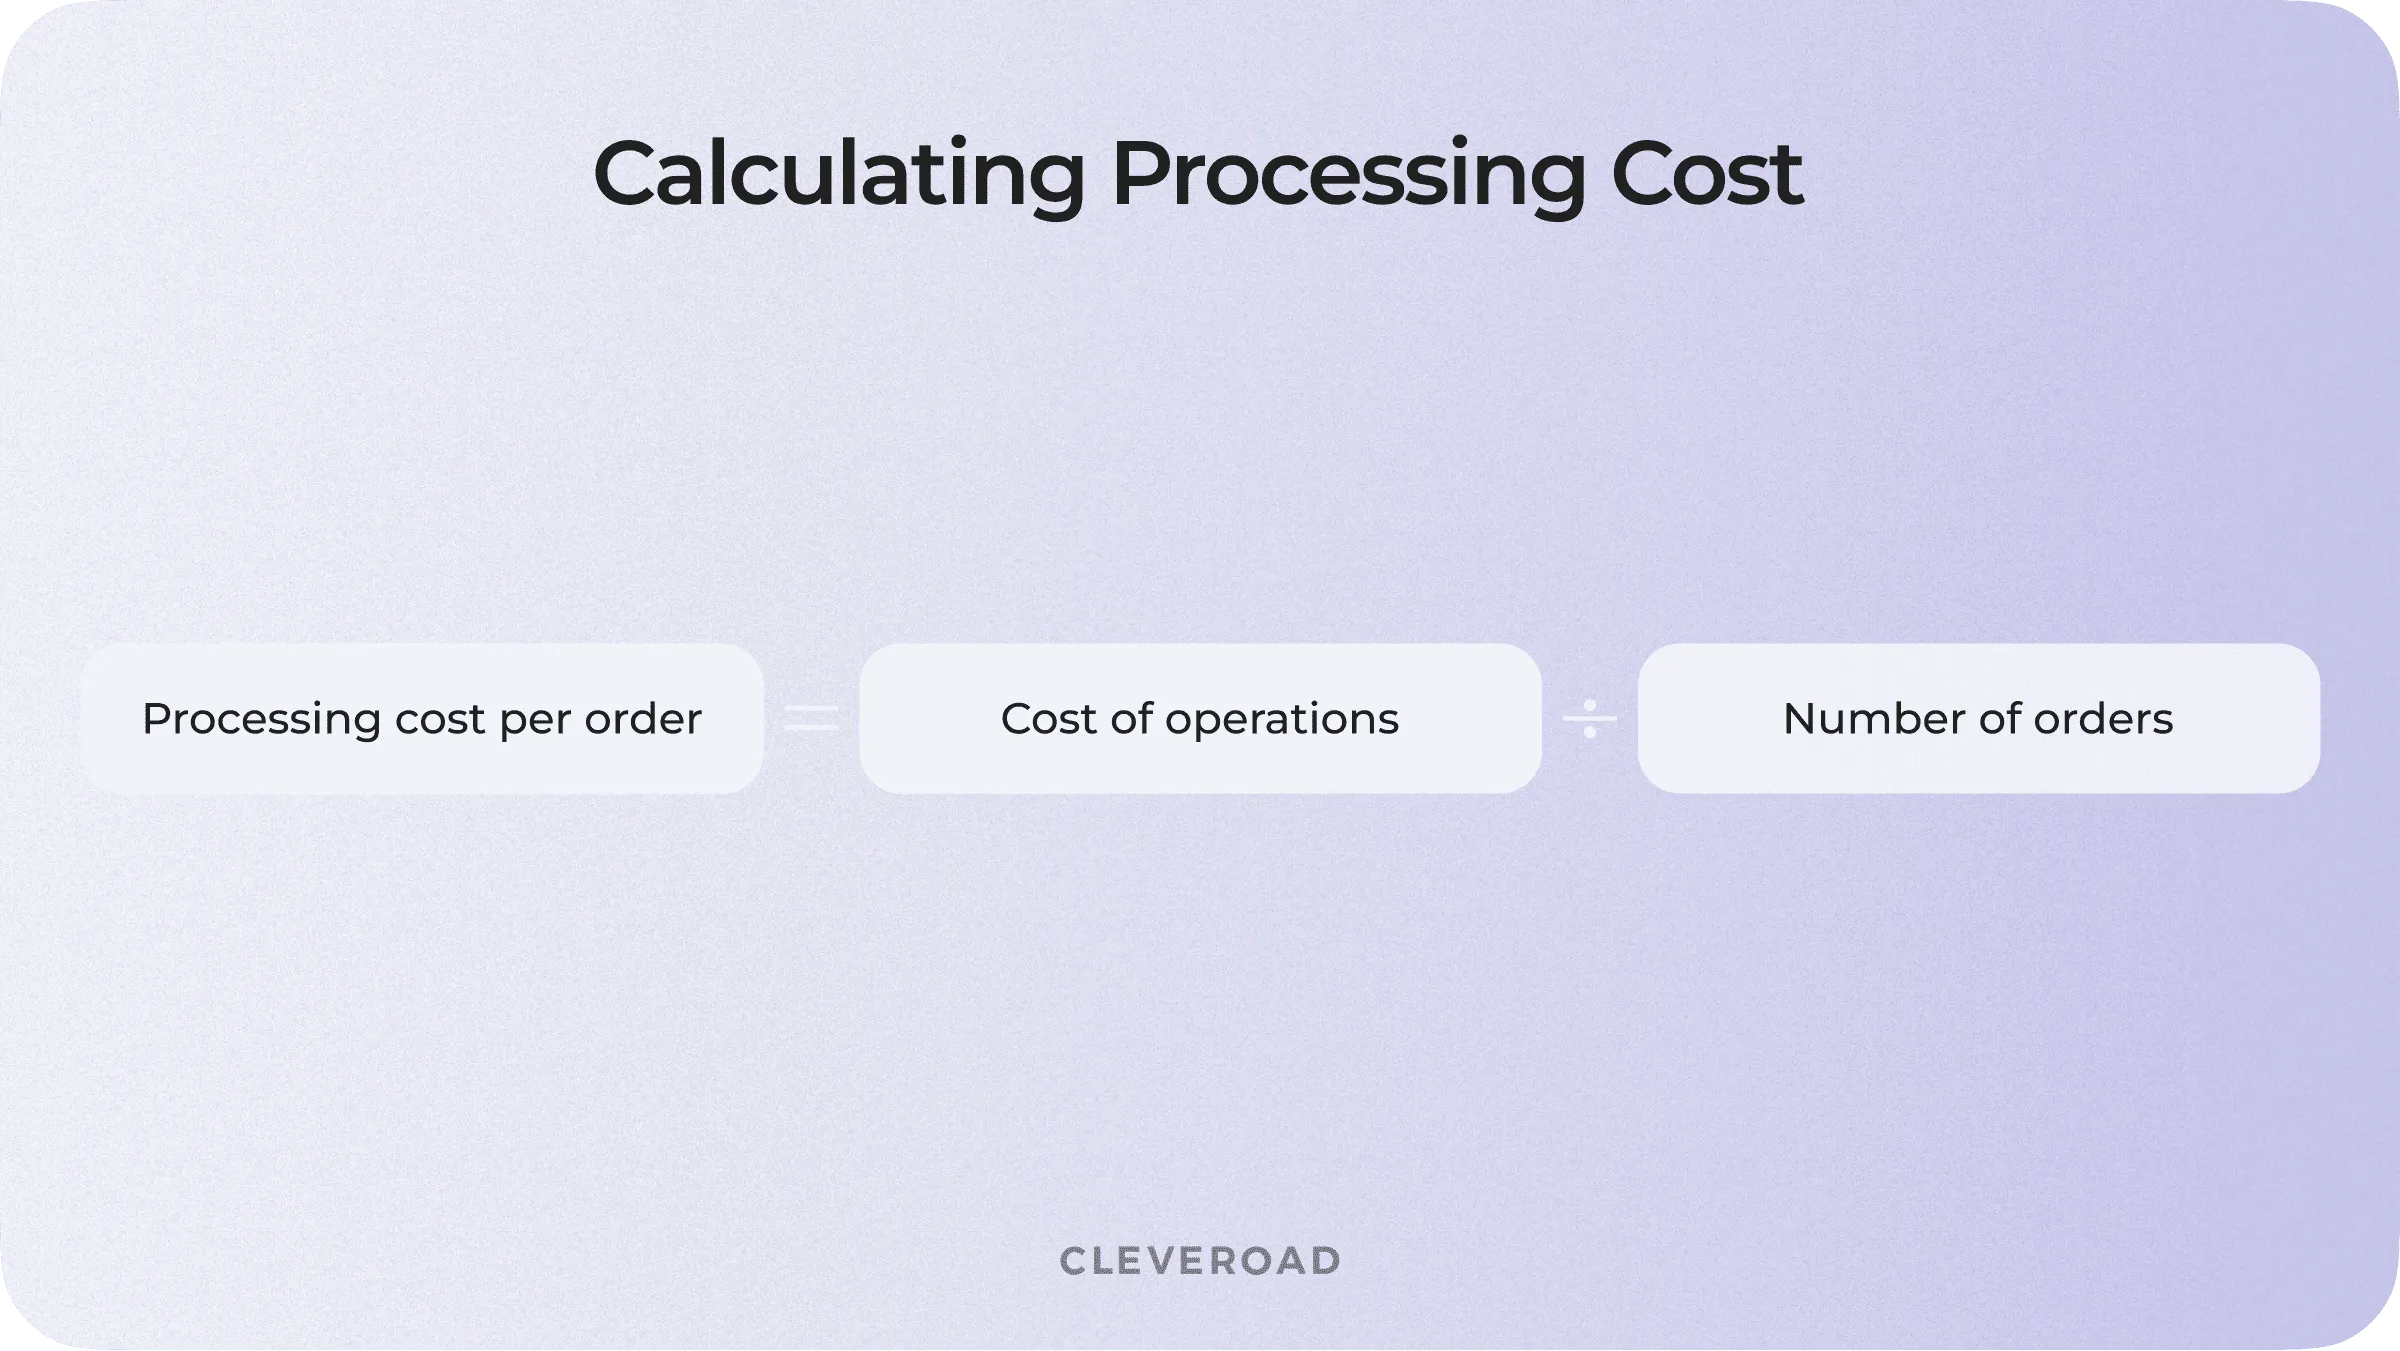 Processing Cost per Order